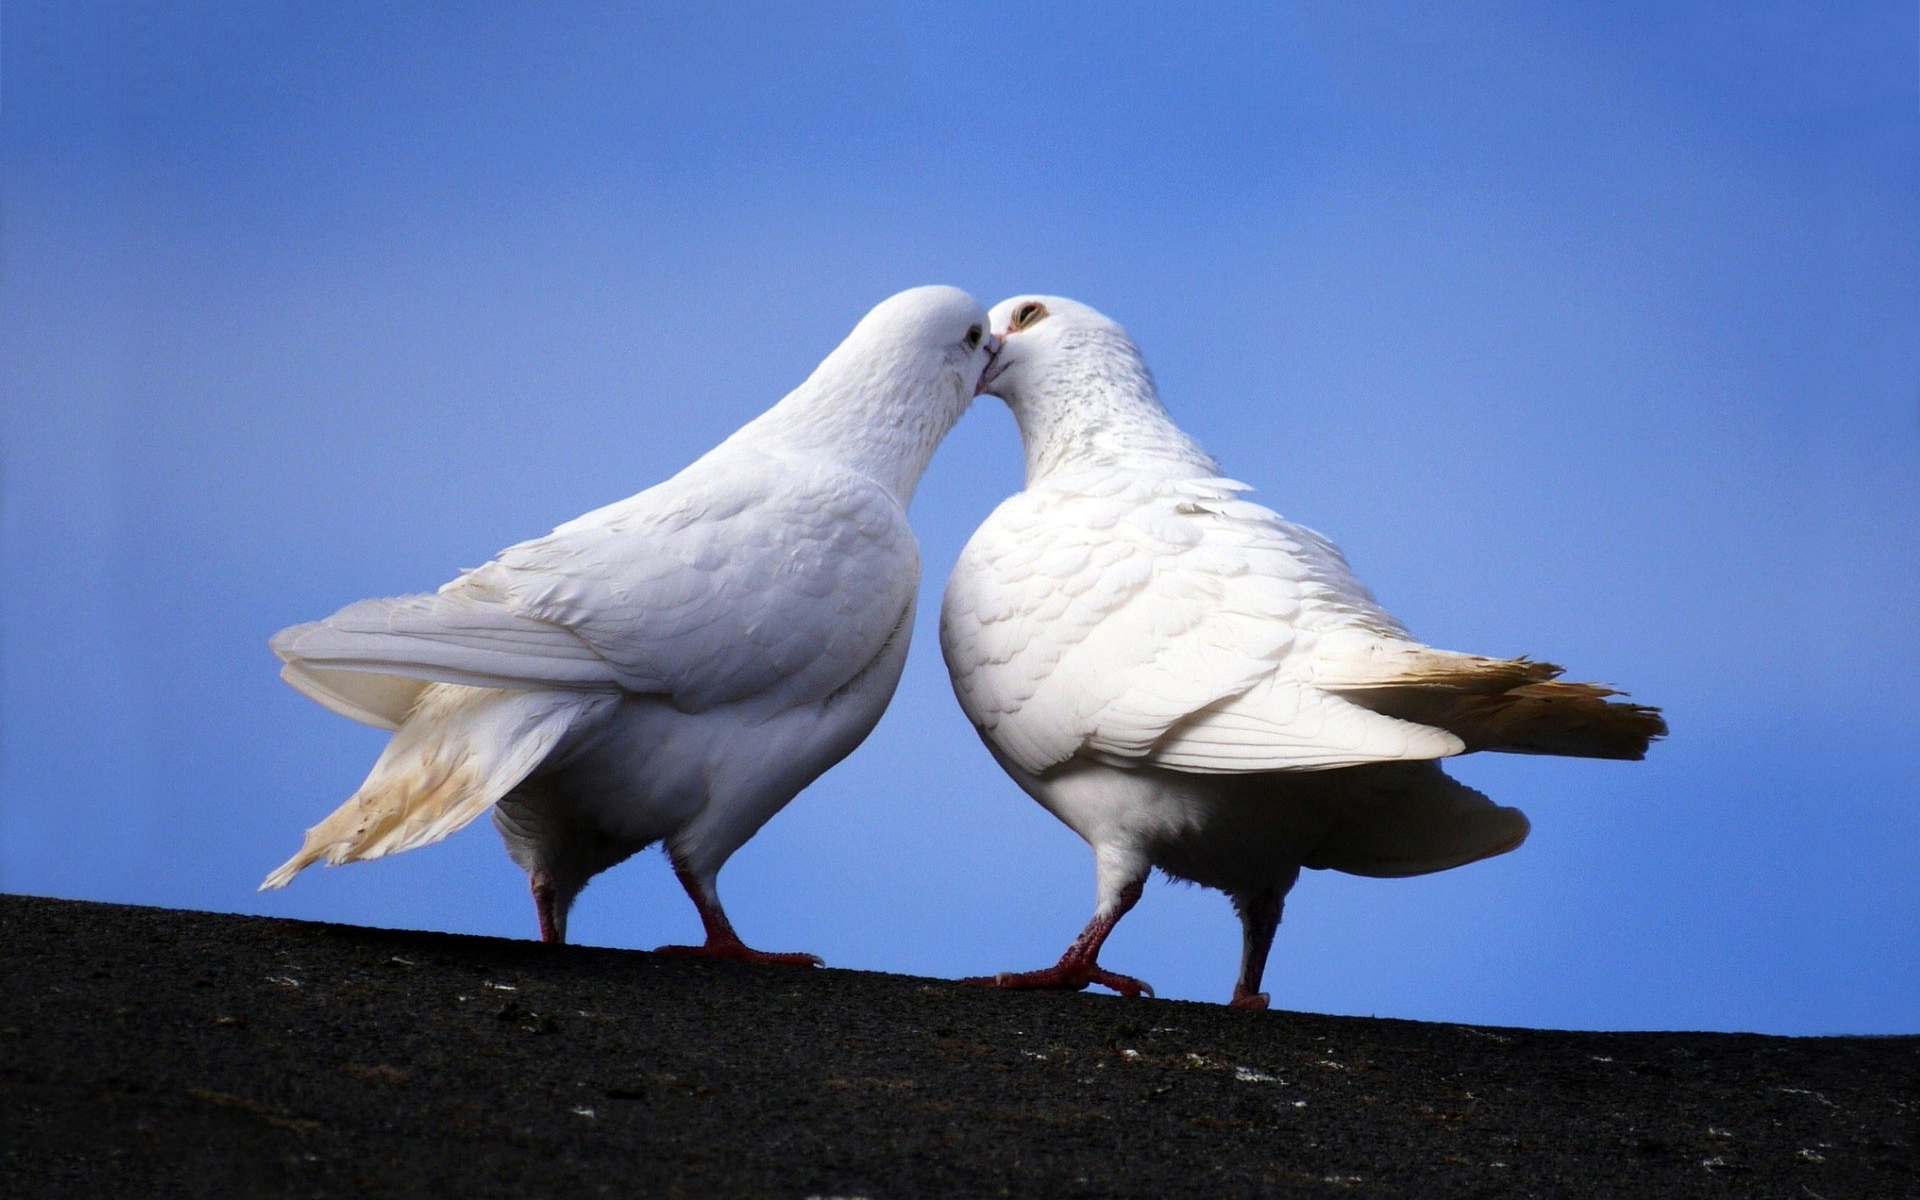 White doves kiss